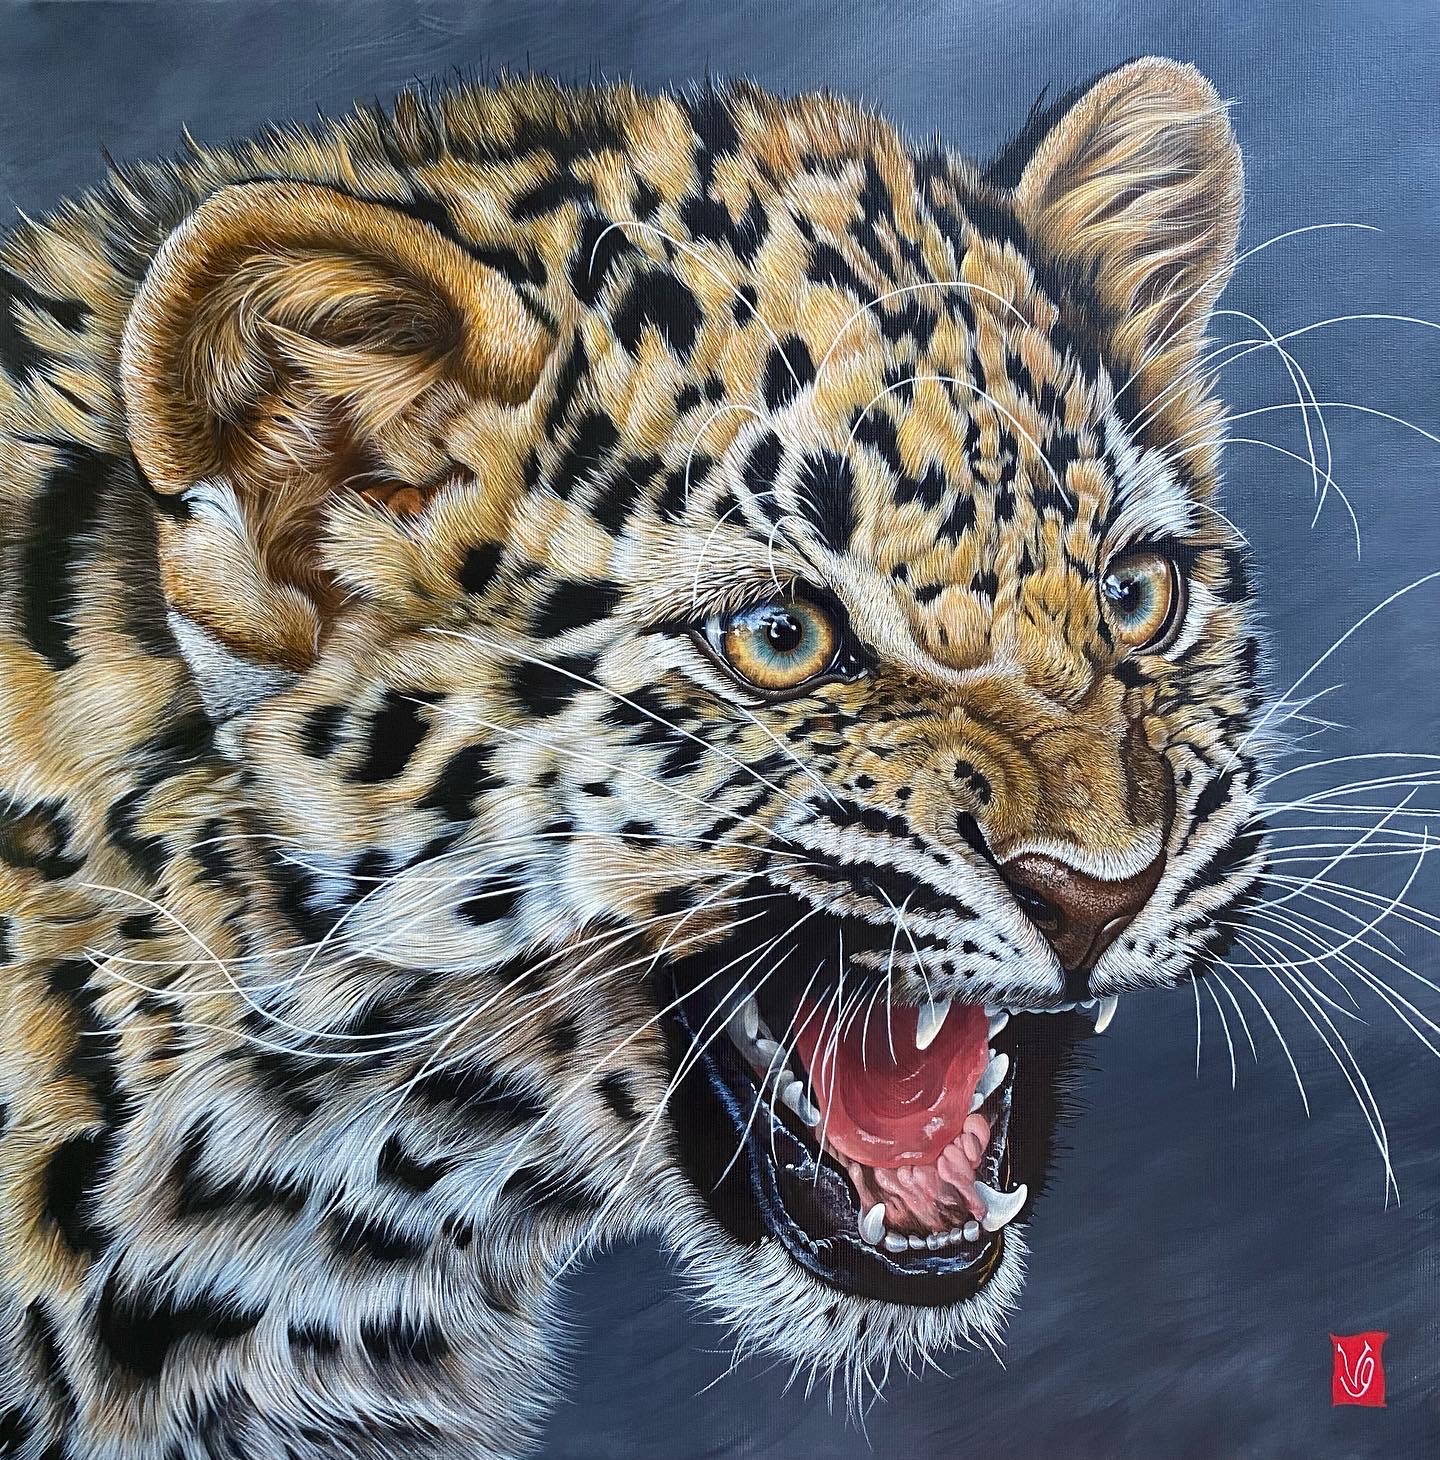 Premier courroux (Amour léopard), Acrylique sur toile, 80 x 80 cm, 2022 -Collection privée